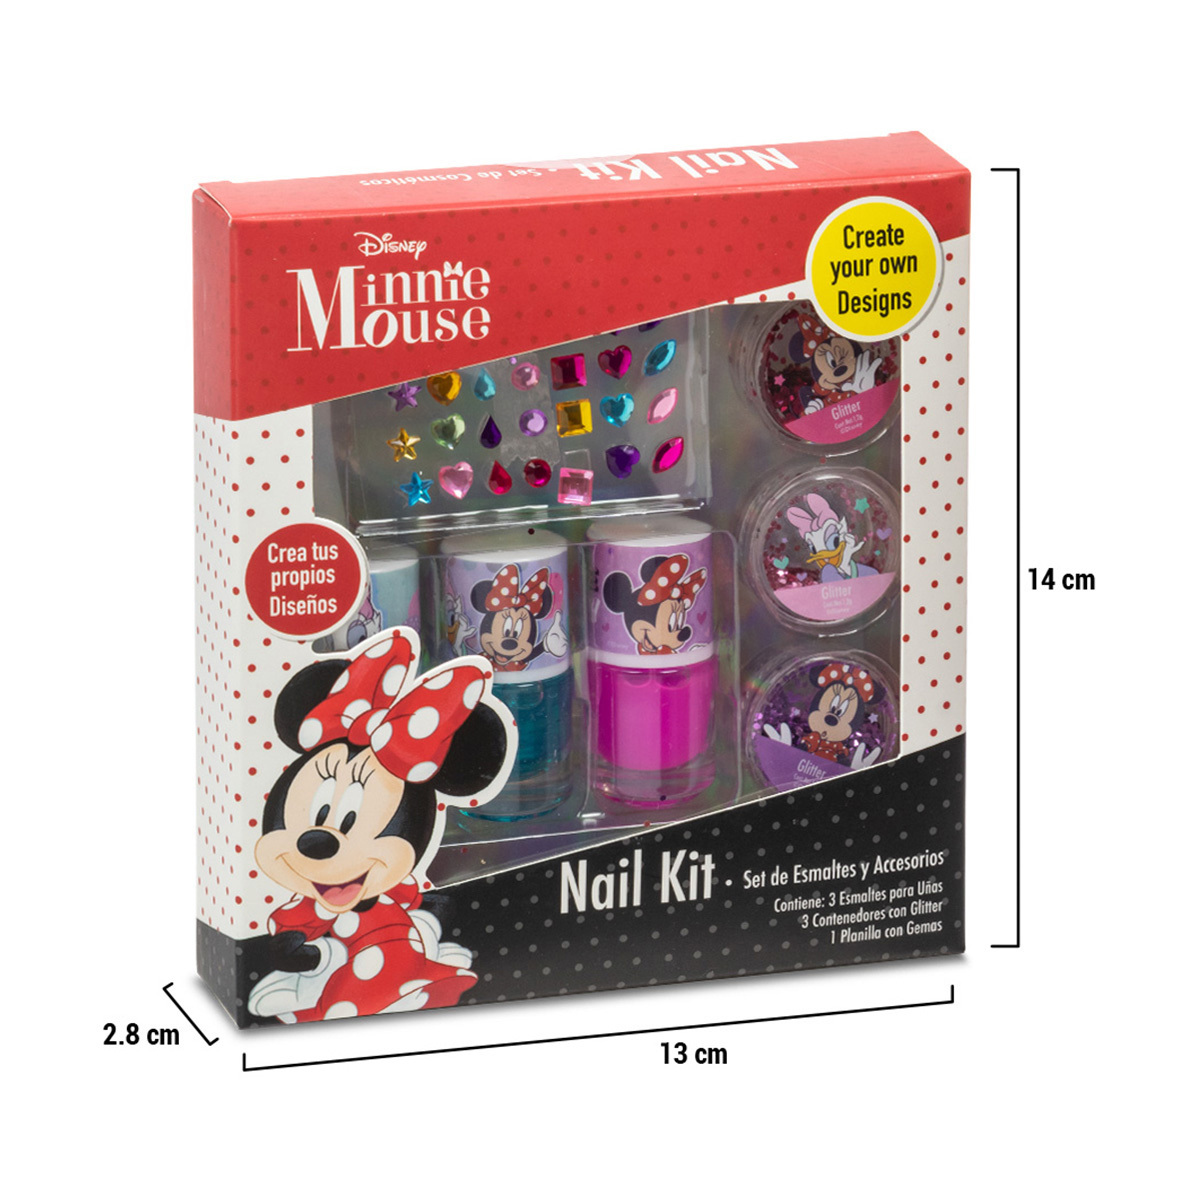 Kit de Esmaltes y Accesorios para Uñas Minnie Mouse | Office Depot Mexico